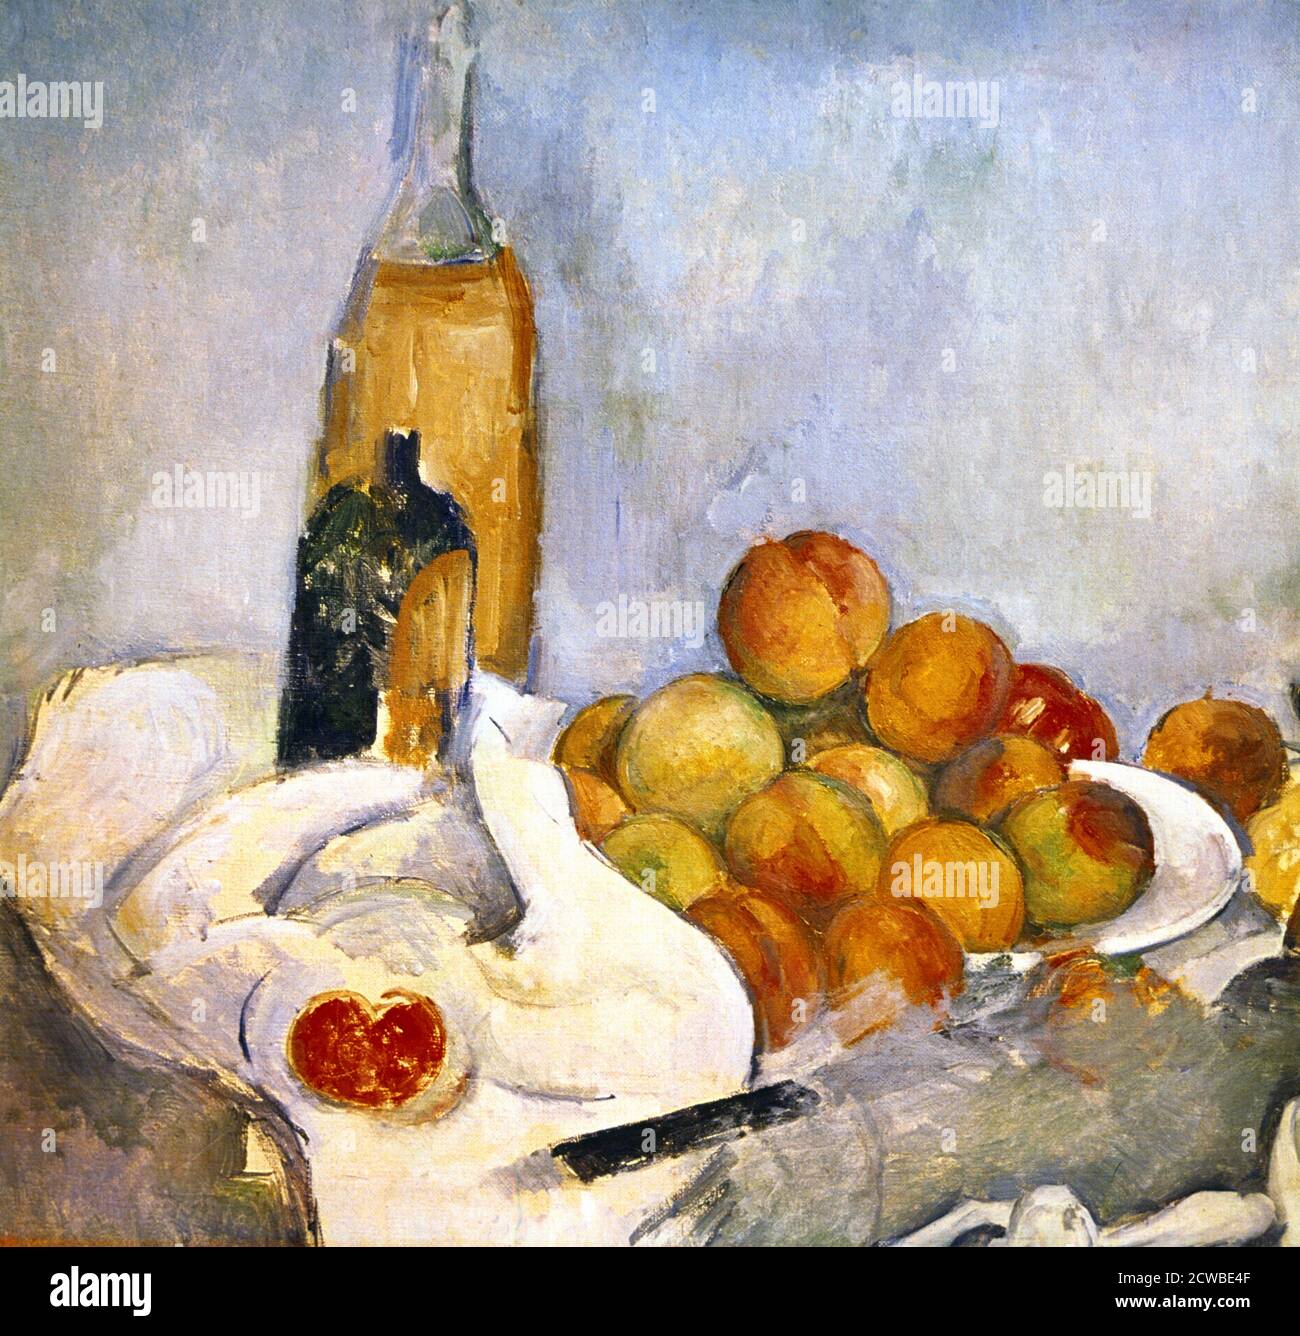 Flaschen und Äpfel, c1870-1906. Künstler: Paul Cezanne. Cezanne (1839-1906) war ein französischer Künstler und Post-Impressionist Maler, dessen Arbeit legte den Grundstein für den Übergang von der 19. Jahrhundert impressionistischen Bewegung zu 20. Jahrhundert Stile wie Kubismus. Stockfoto